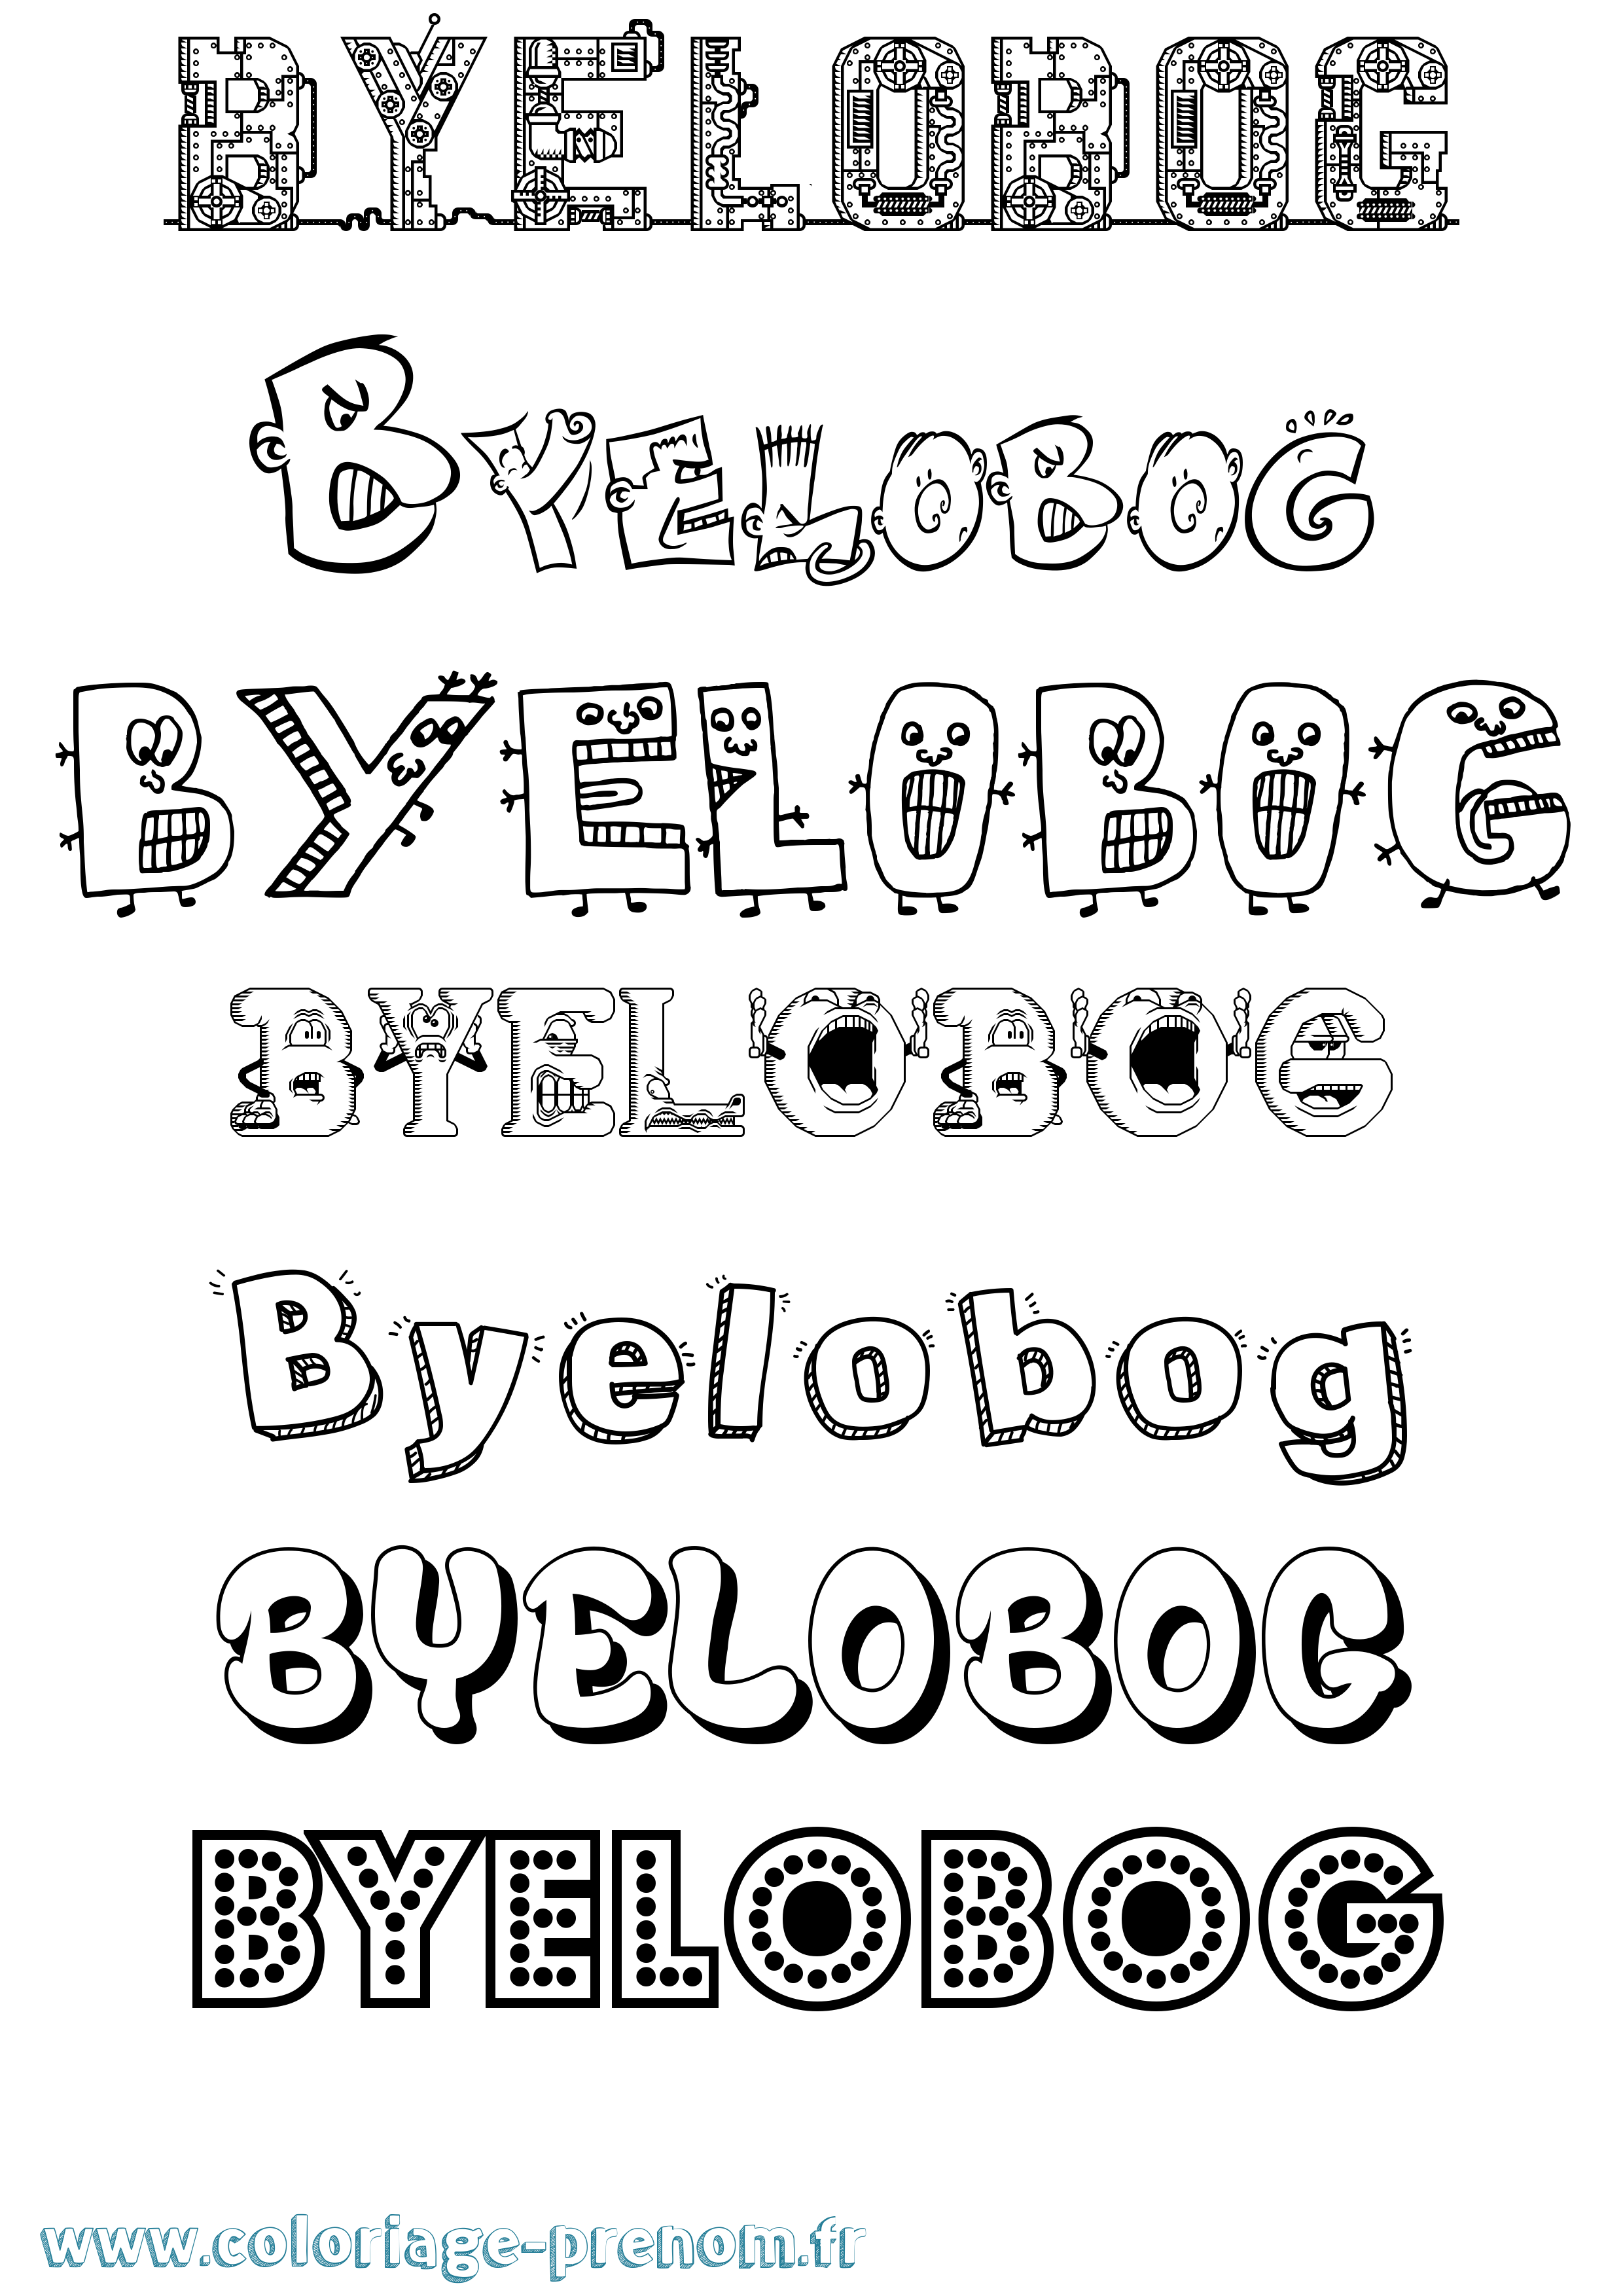 Coloriage prénom Byelobog